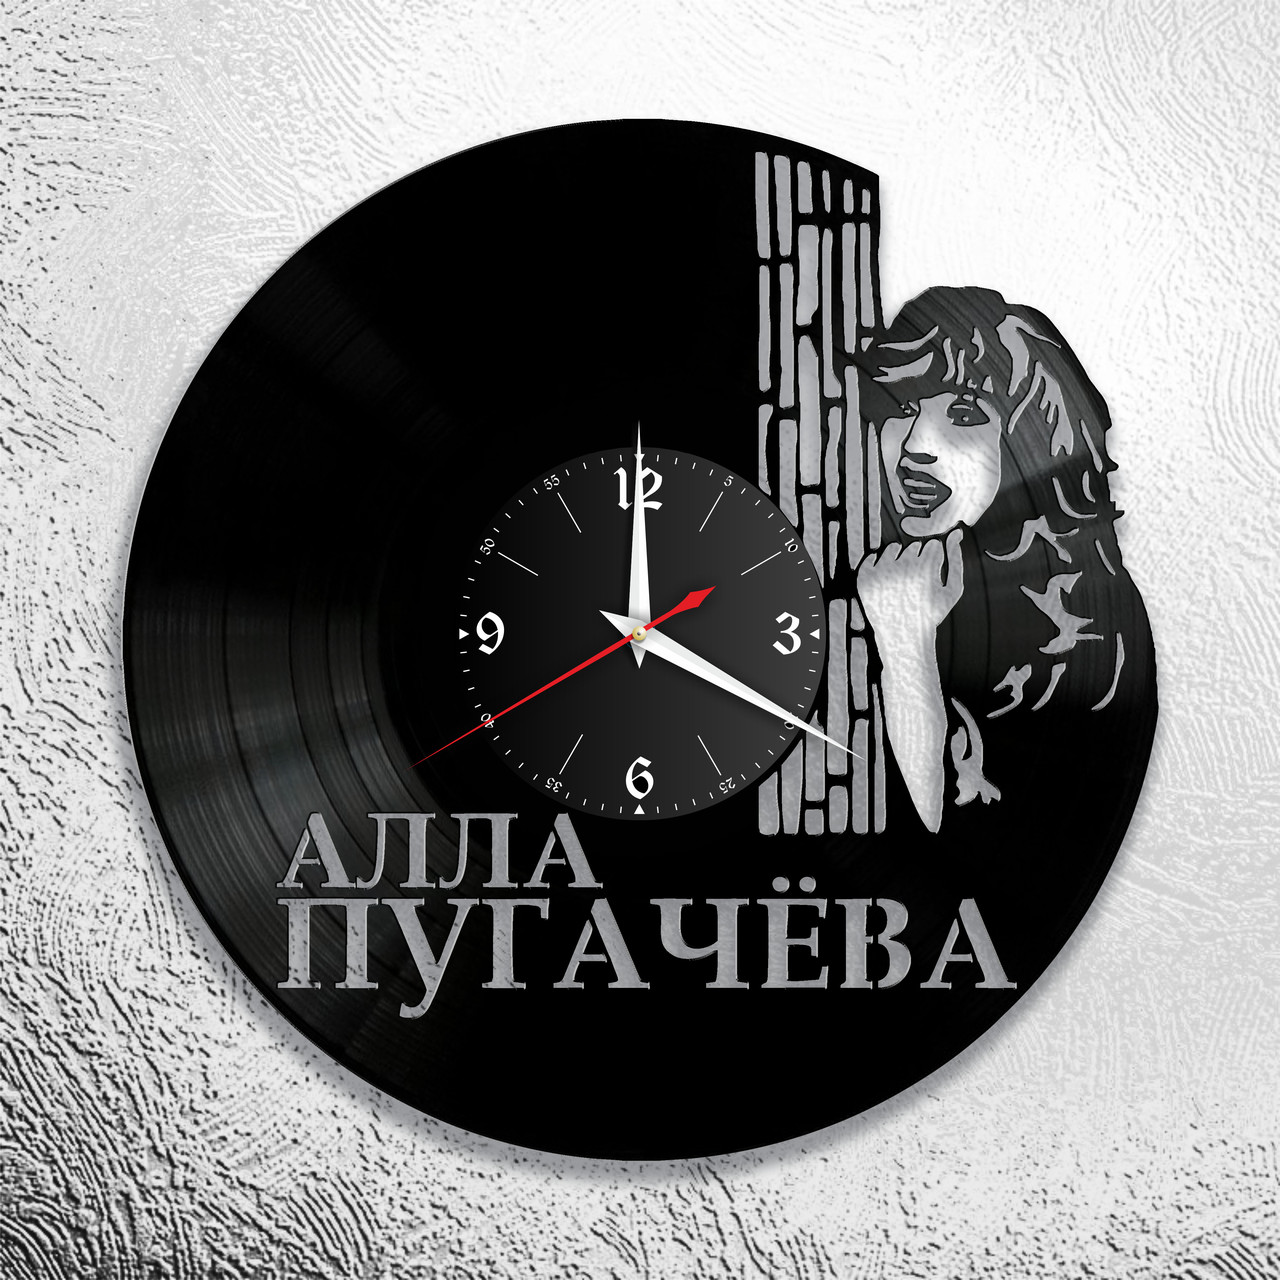 Часы из виниловой пластинки "Алла Пугачёва" версия 2, фото 1